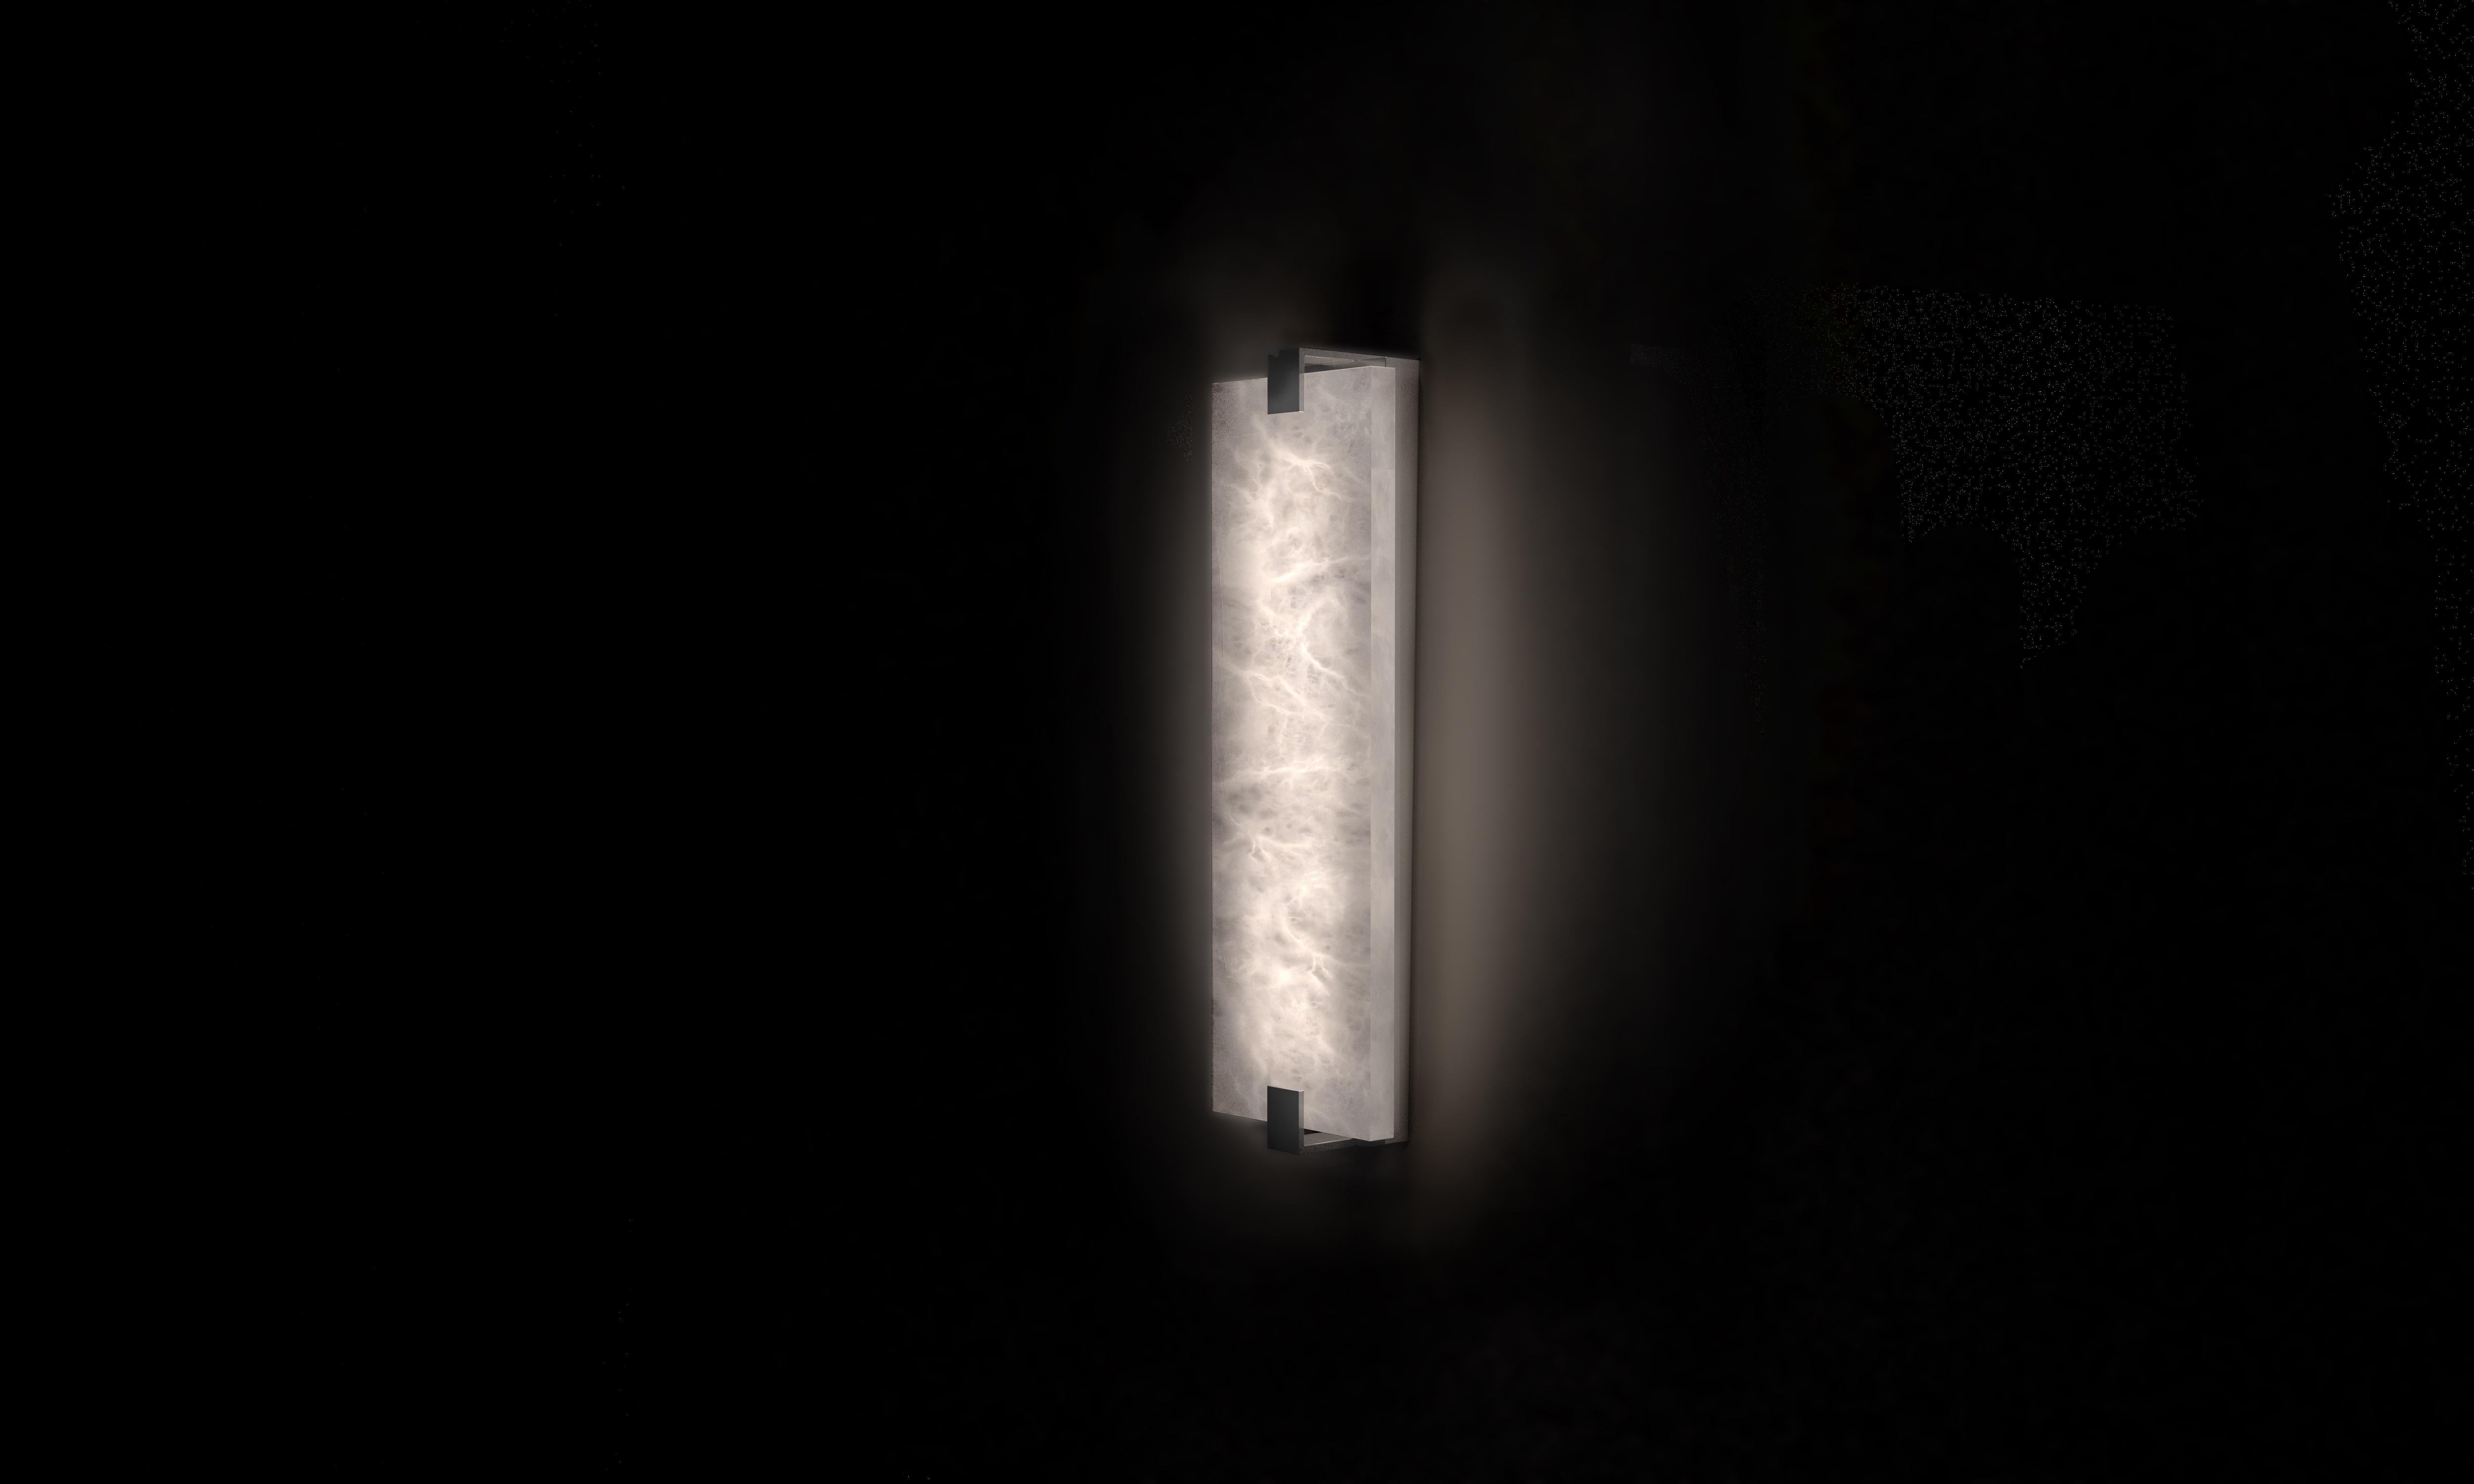 Kleine Kinkairo Wandleuchte von Alabastro Italiano
Abmessungen: T 8 x B 15 x H 50 cm.
MATERIALIEN: Weißer Alabaster, Metall (Shiny Silver).
Erhältlich in anderen Ausführungen und Größen.

1 x LED-Streifen
21,6 W/m

Alle unsere Lampen können je nach